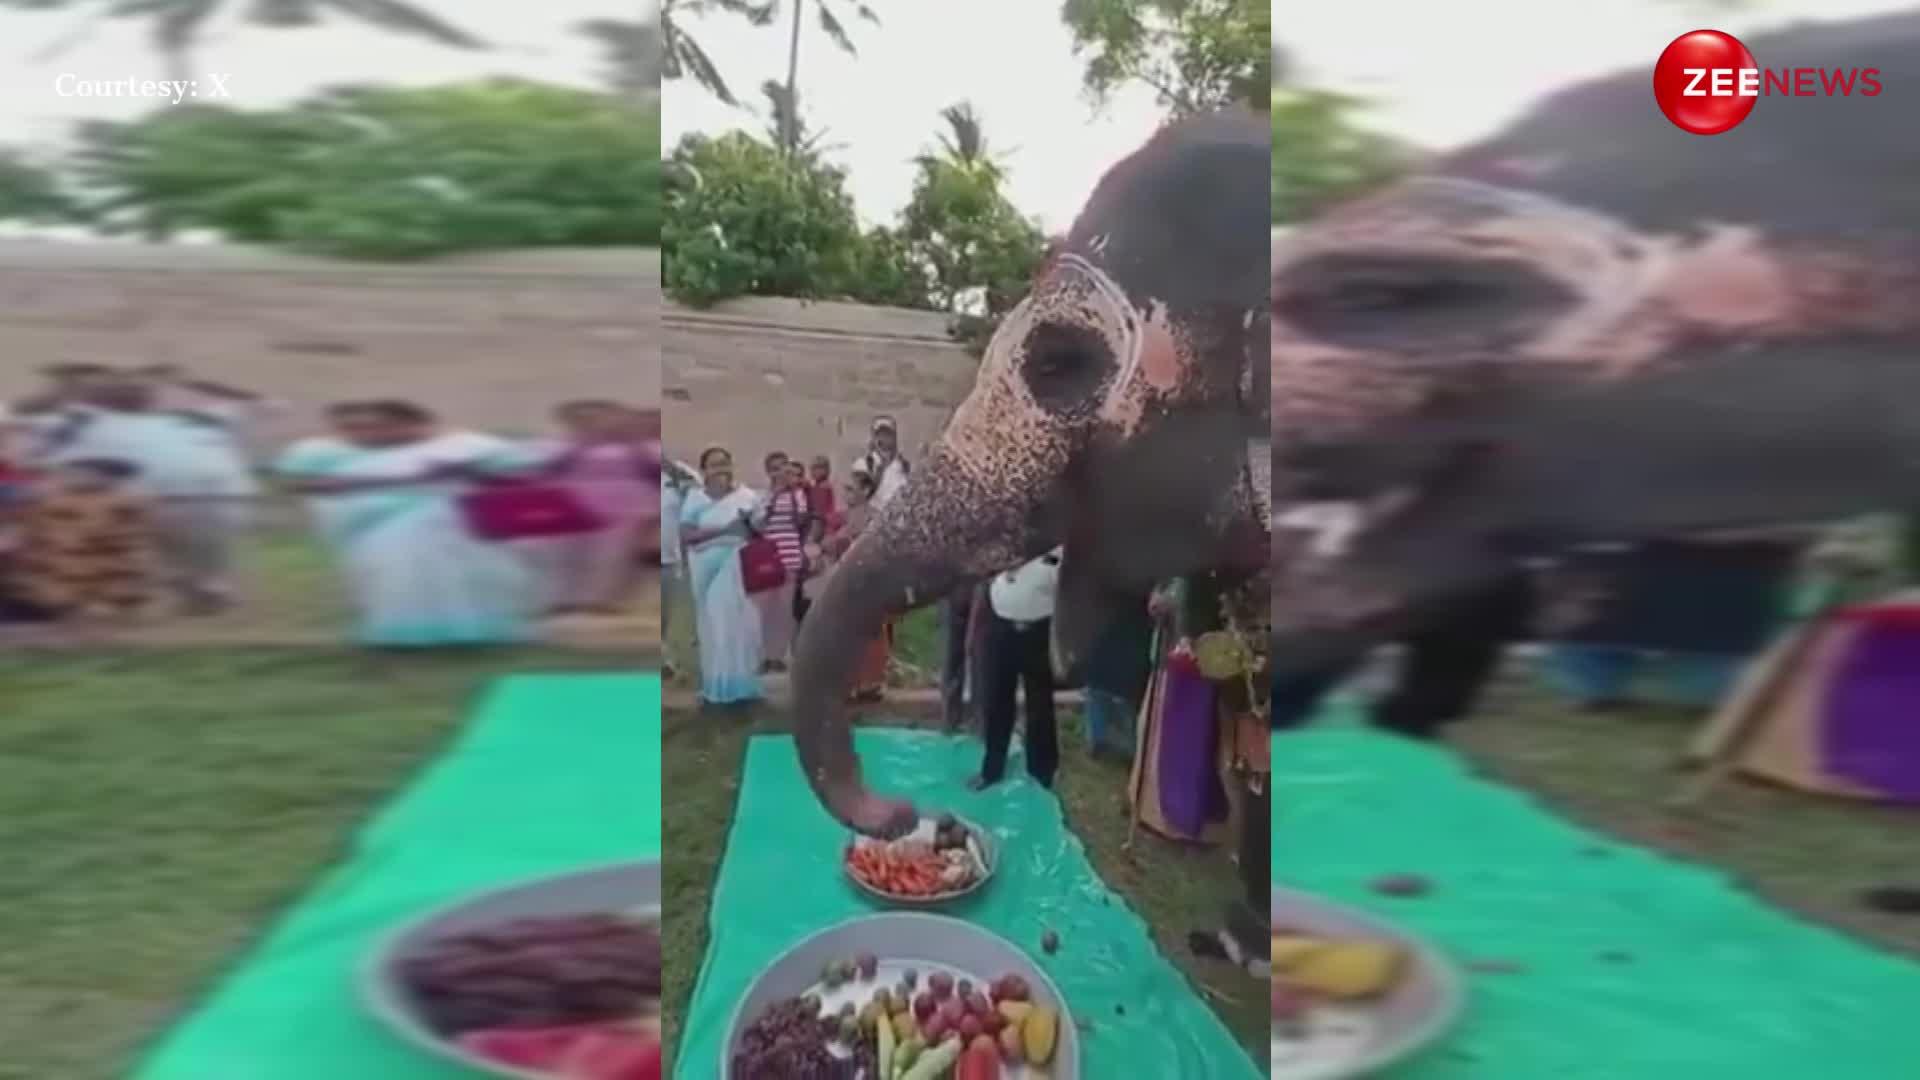 तमिलनाडु के इस हाथी का शाही अंदाज में मना 22वां बर्थडे, फल खाते हुए मजे से सूंड हिलाते दिखा गजराज; दिल जीत लेगा वीडियो